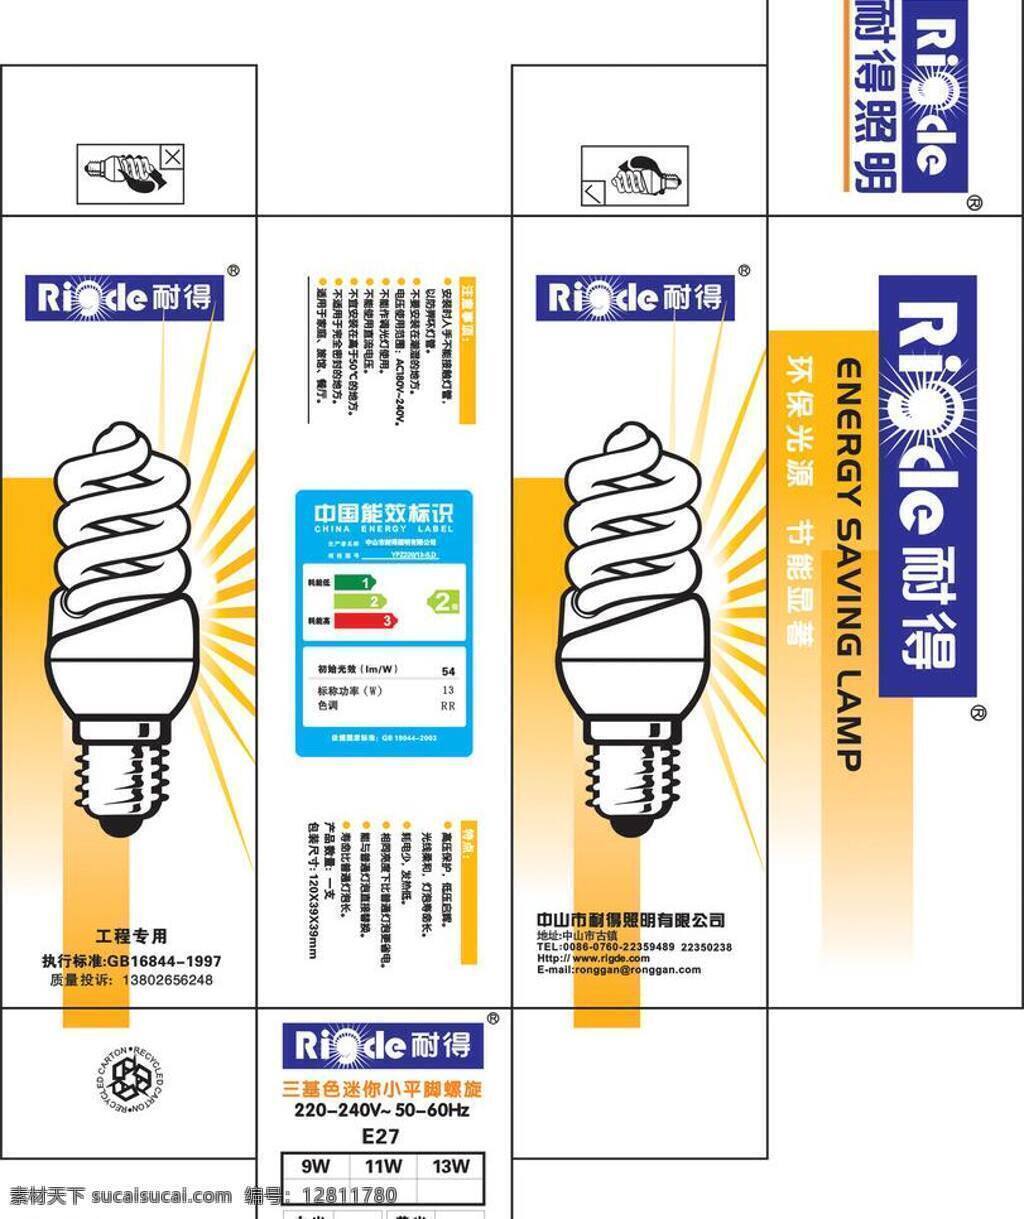 灯泡 包装设计 包装盒 灯饰 矢量 模板下载 2级节能 海报 环保公益海报